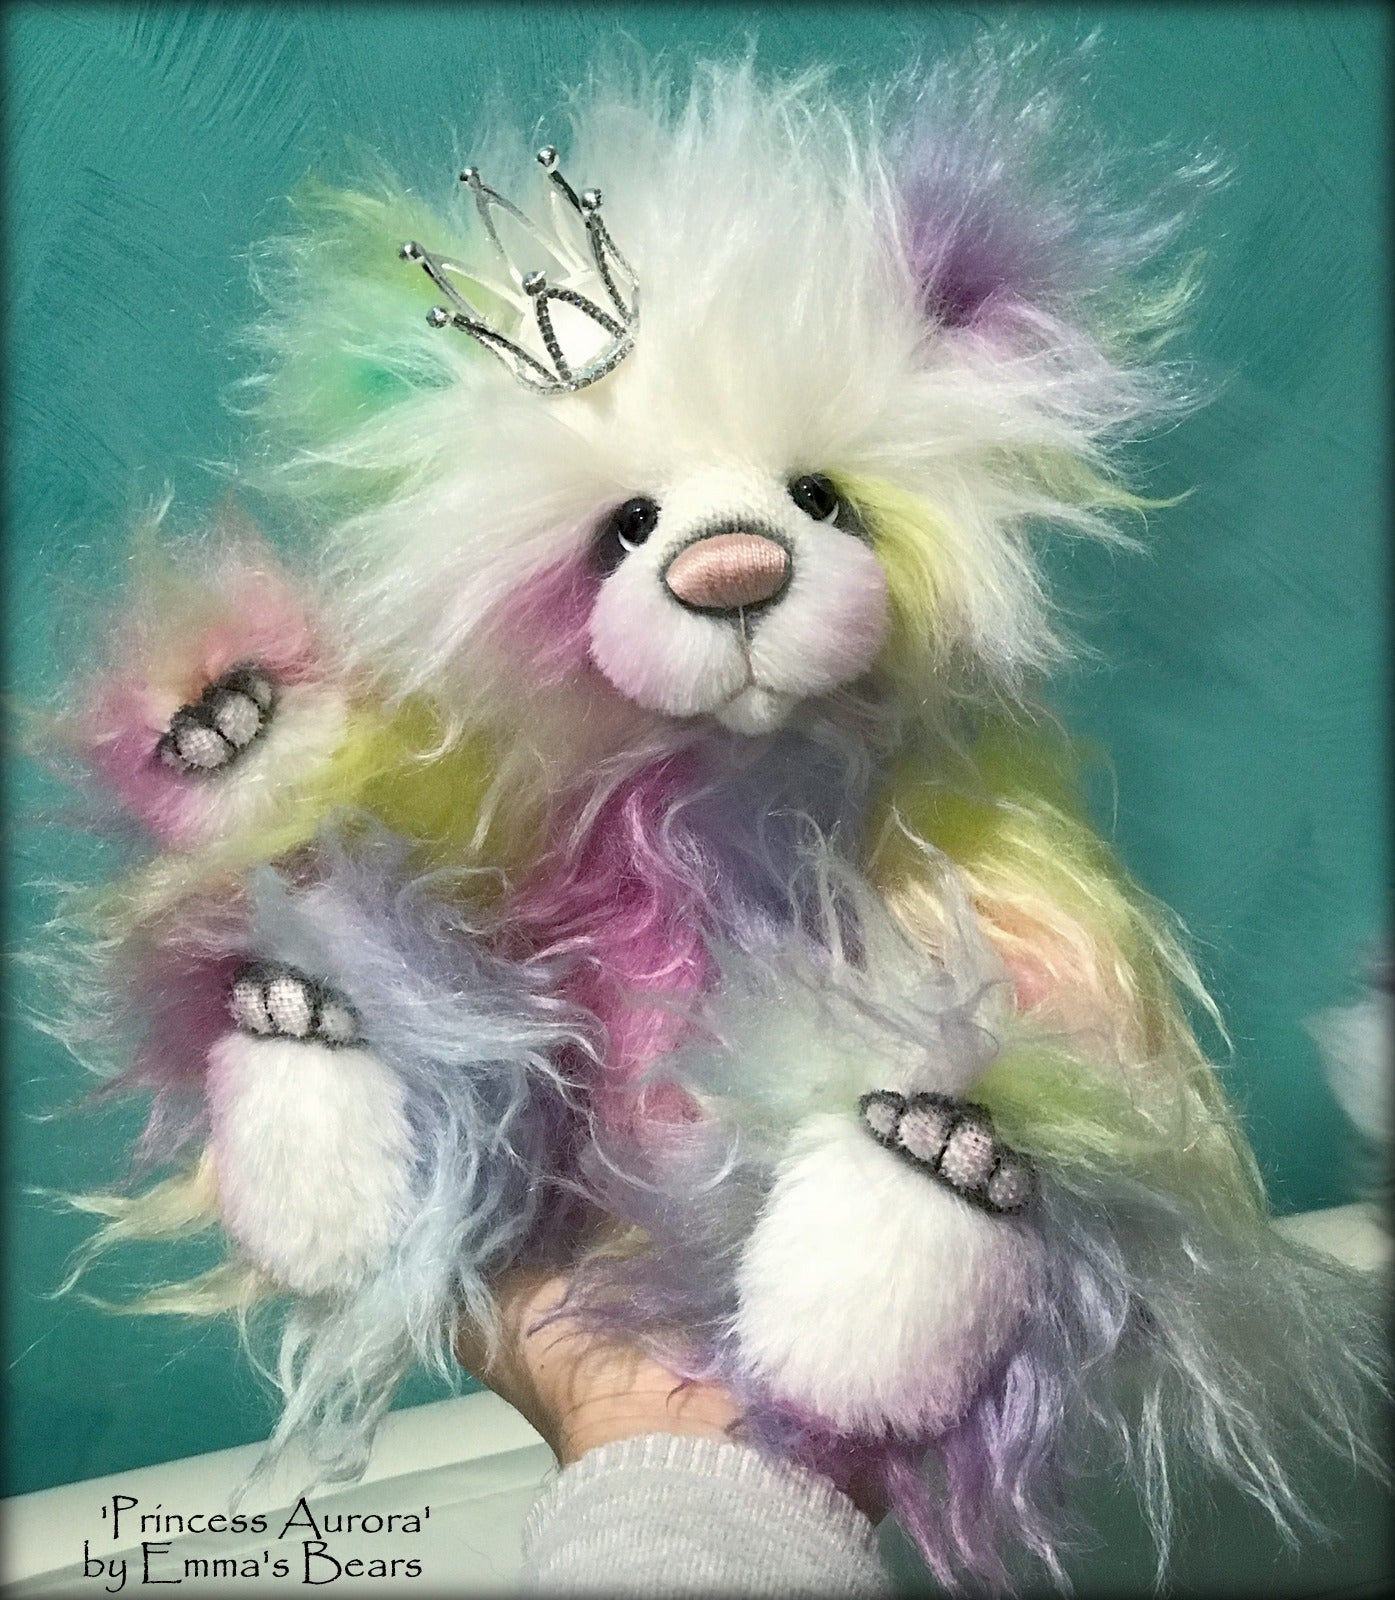 Princess Aurora - 13" hand-dyed rainbow mohair Artist Bear by Emma's Bears - OOAK